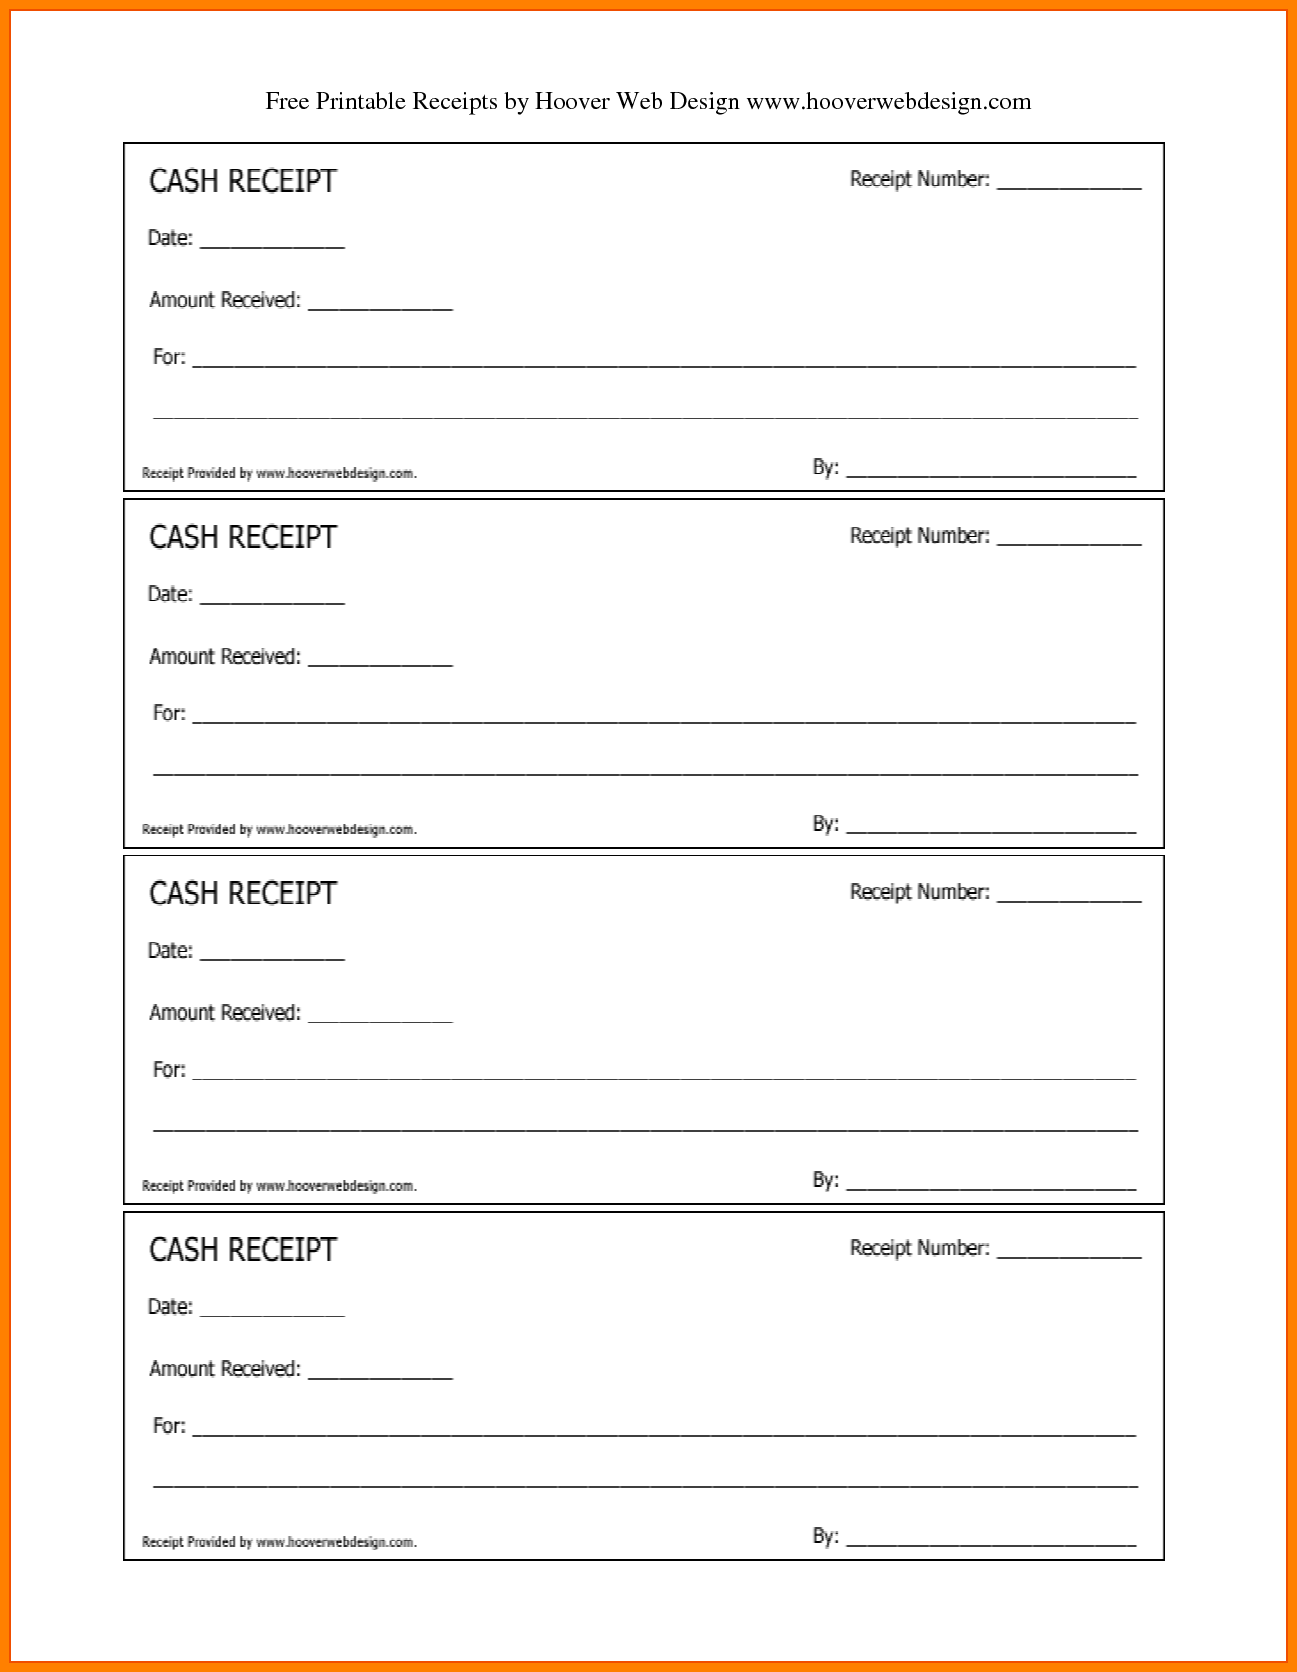 free-printable-blank-receipt-templates-authentic-printable-receipt-templates